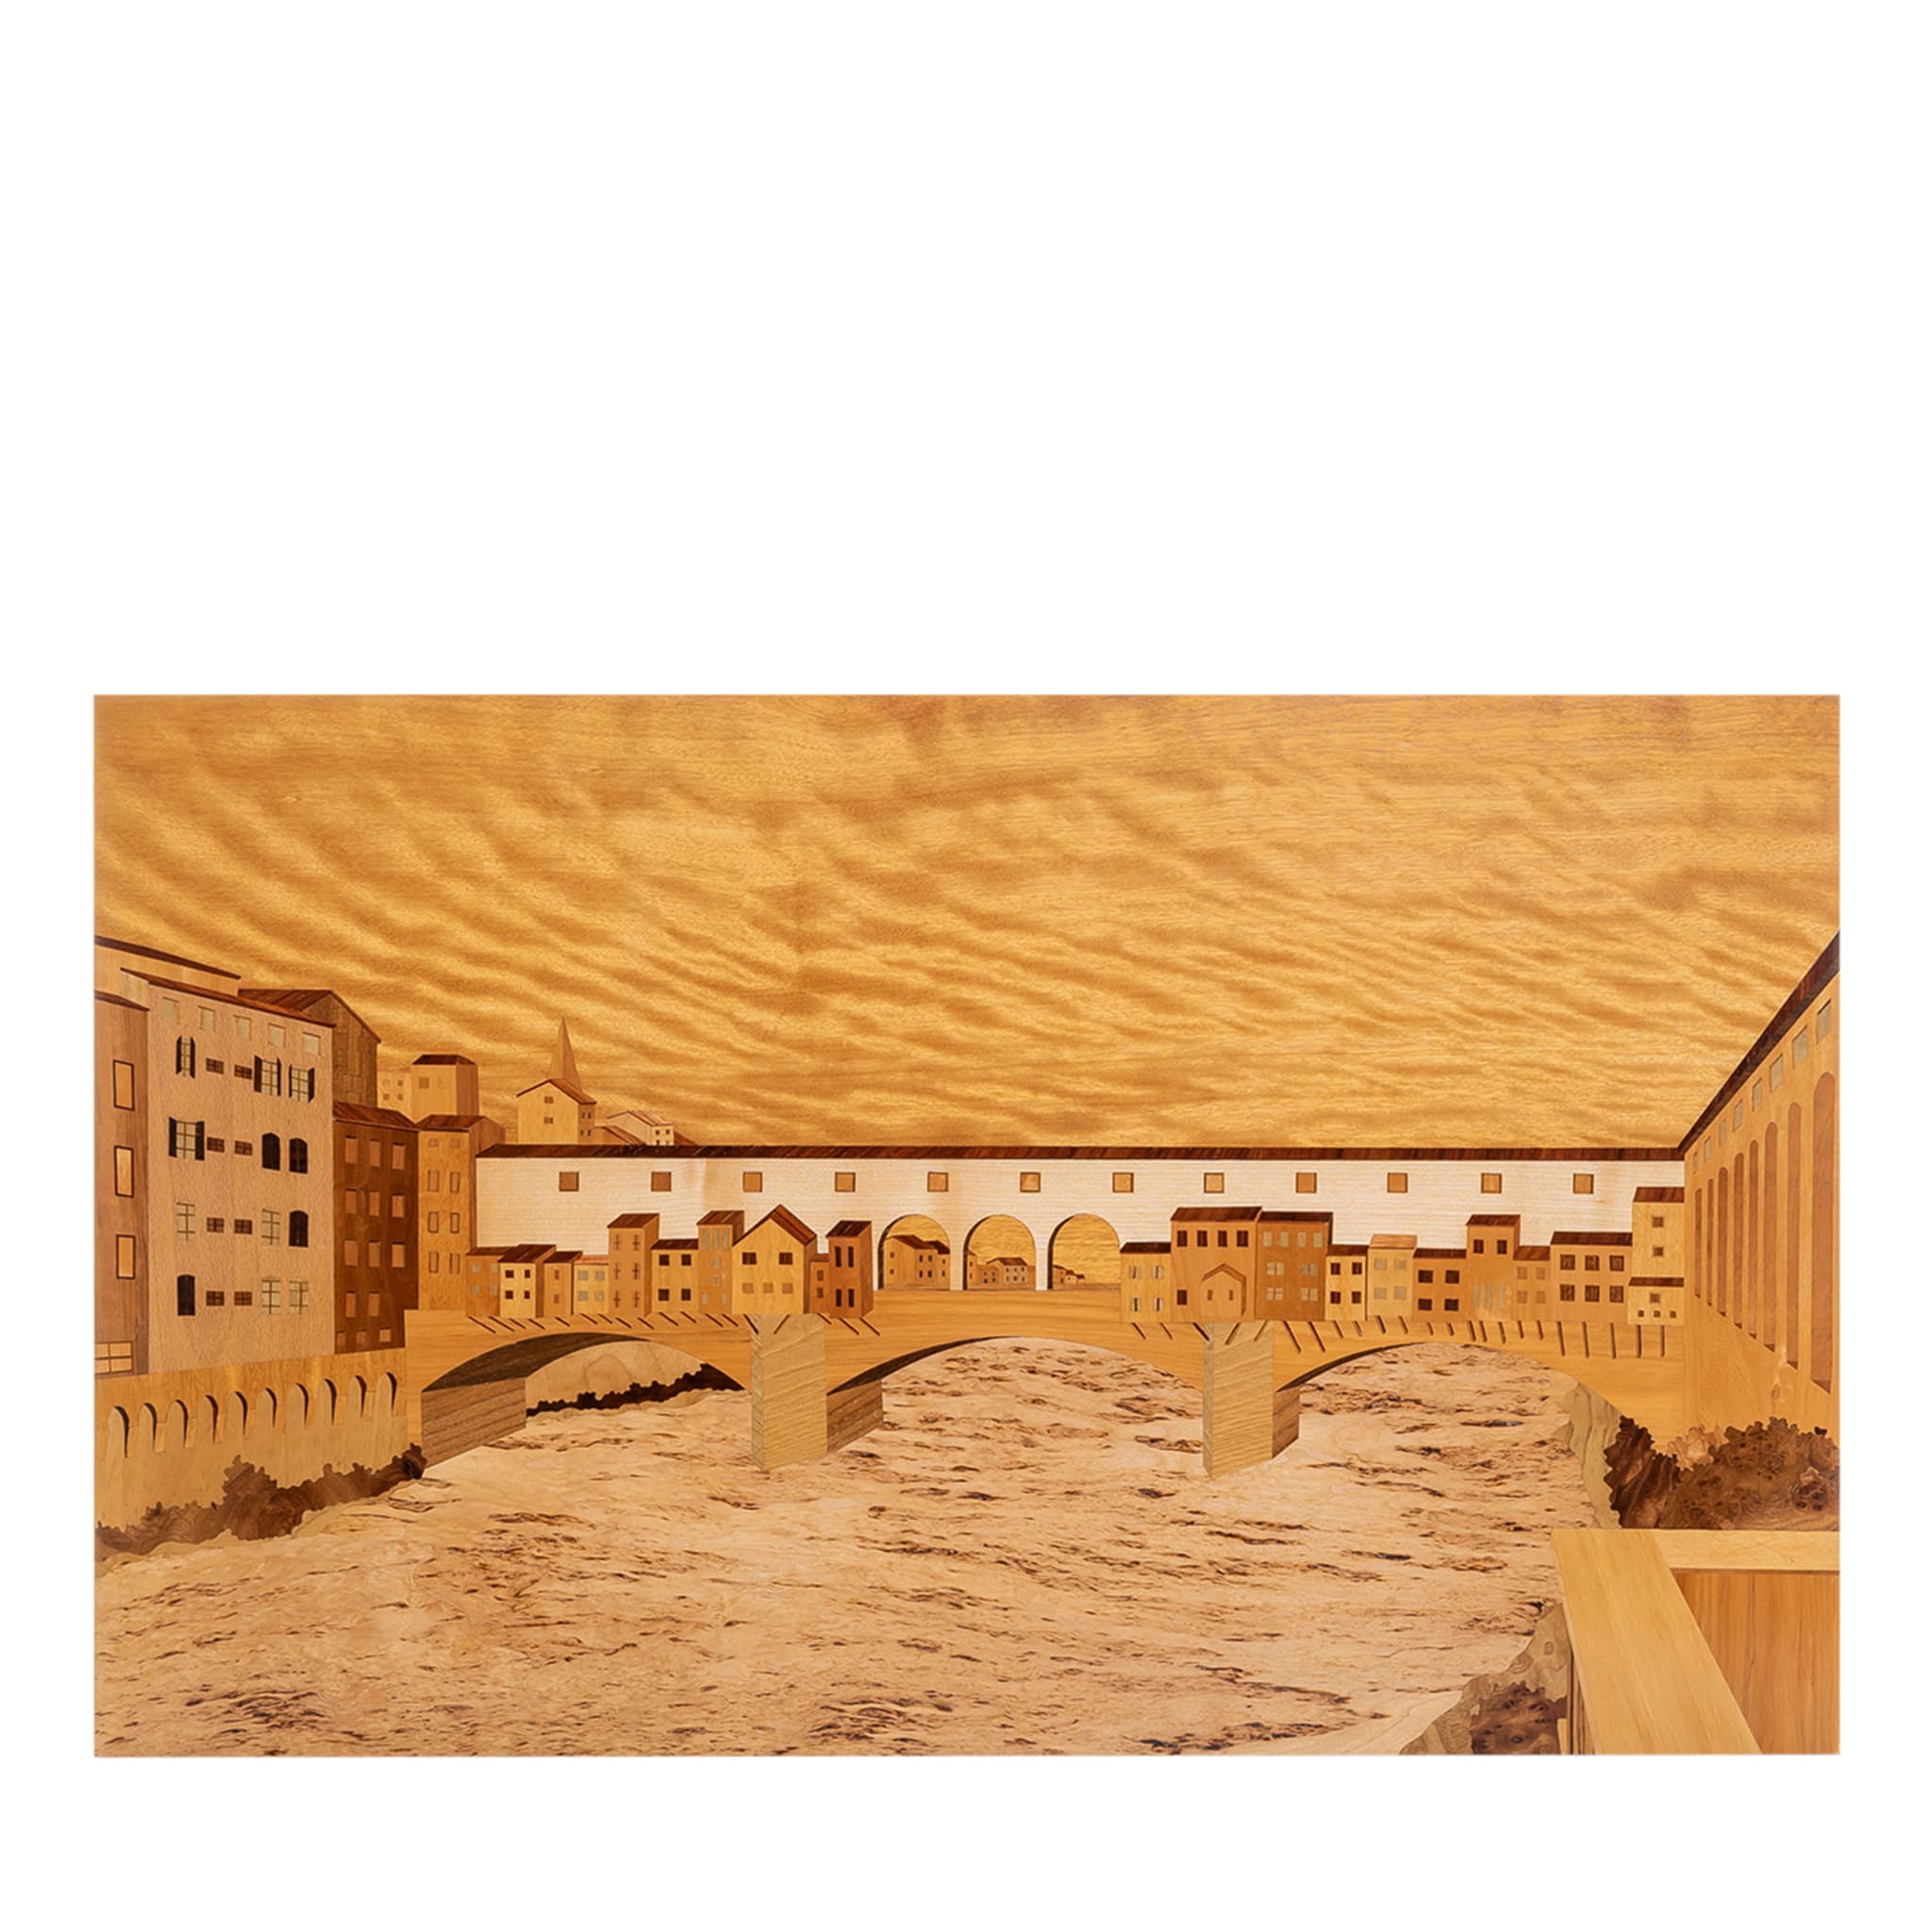 Panel de marquetería Ponte Vecchio Firenze - Vista principal